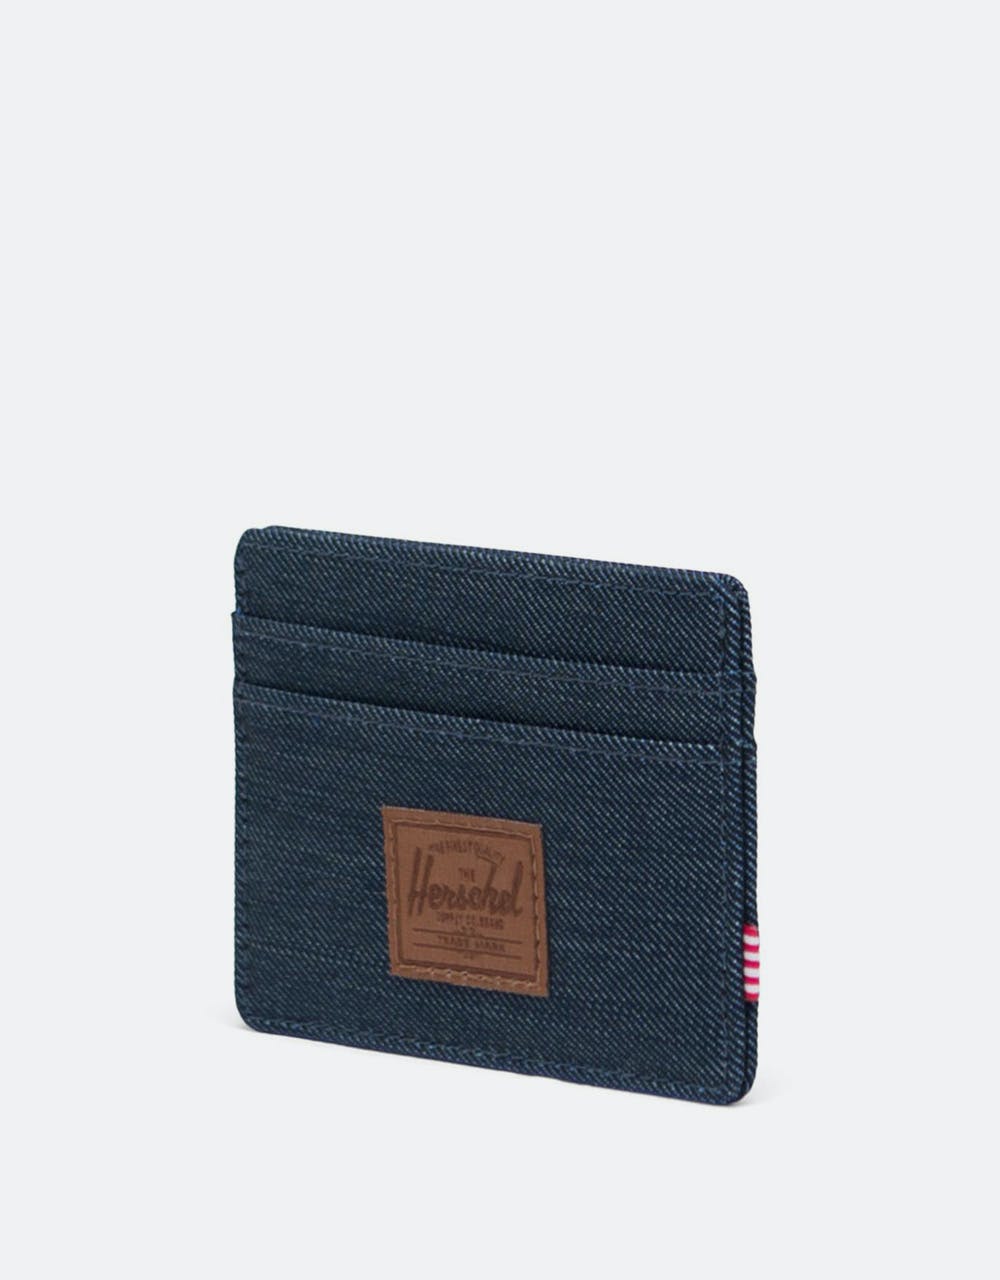 Herschel Supply Co. Charlie RFID Card Holder - Indigo Denim Crosshatch